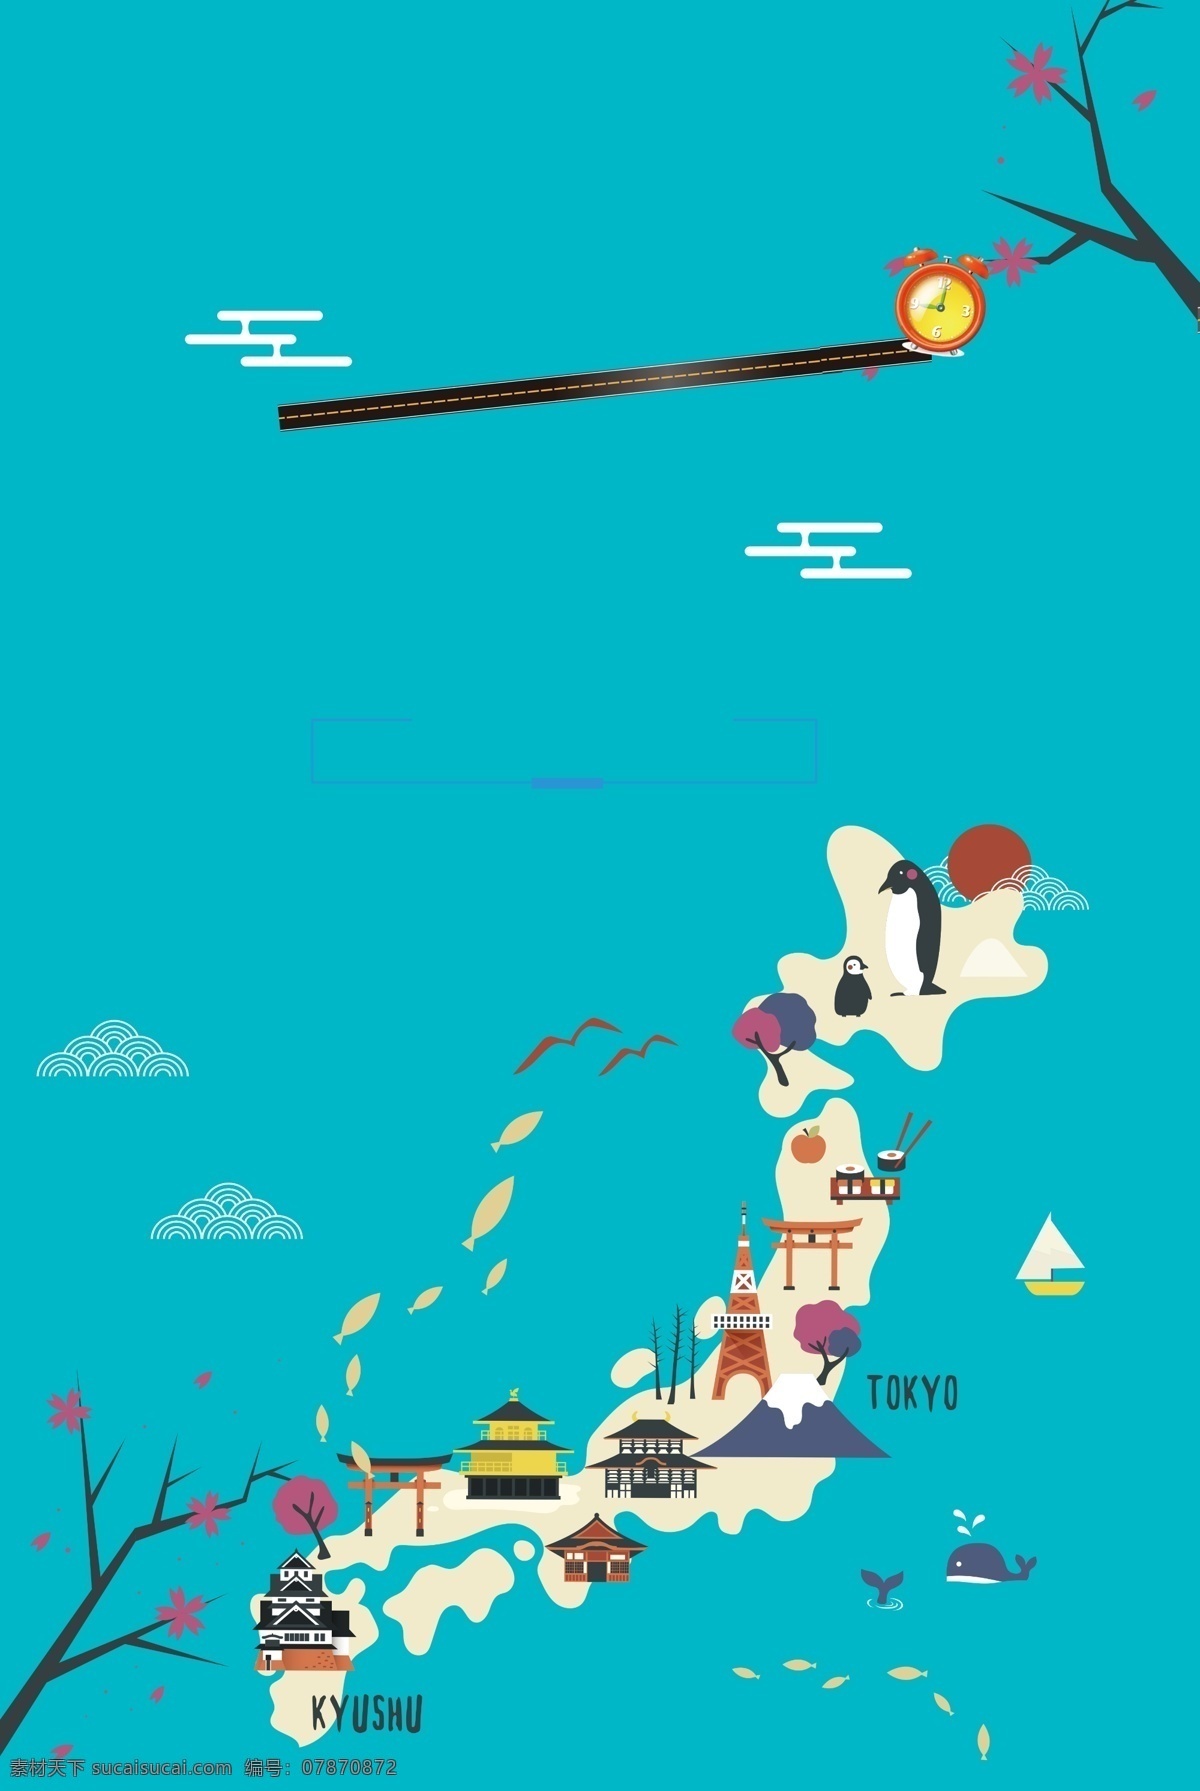 简约 日本旅游 海报 背景 模板 日本背景 日本旅游背景 日本旅游攻略 日本旅游景点 日本旅游路线